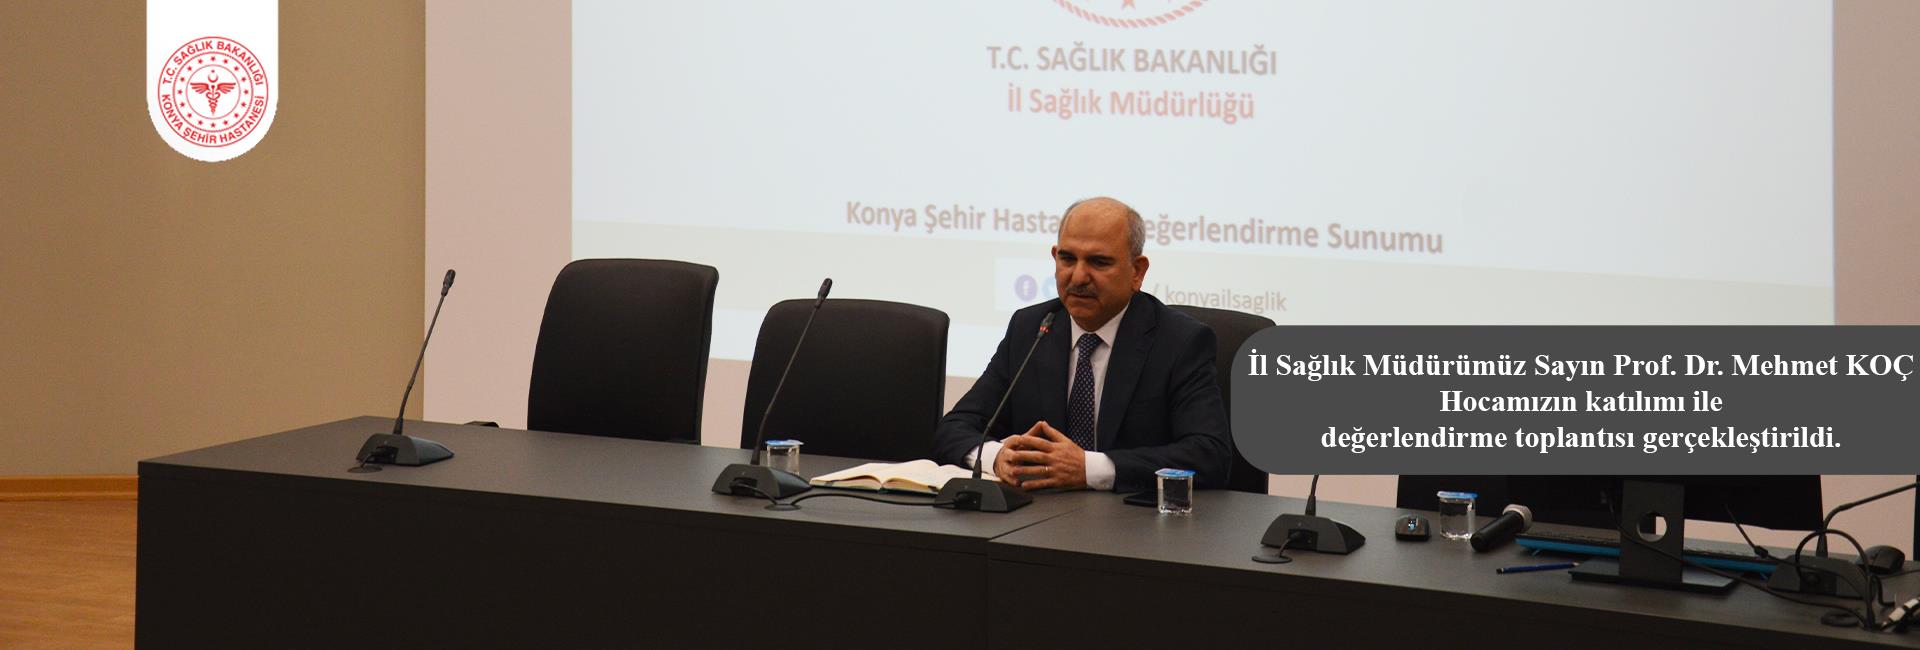 Hastanemizde İl Sağlık Müdürümüz Sayın Prof. Dr. Mehmet Koç Hocamızın katılımı ile değerlendirme toplantısı yapılmıştır.